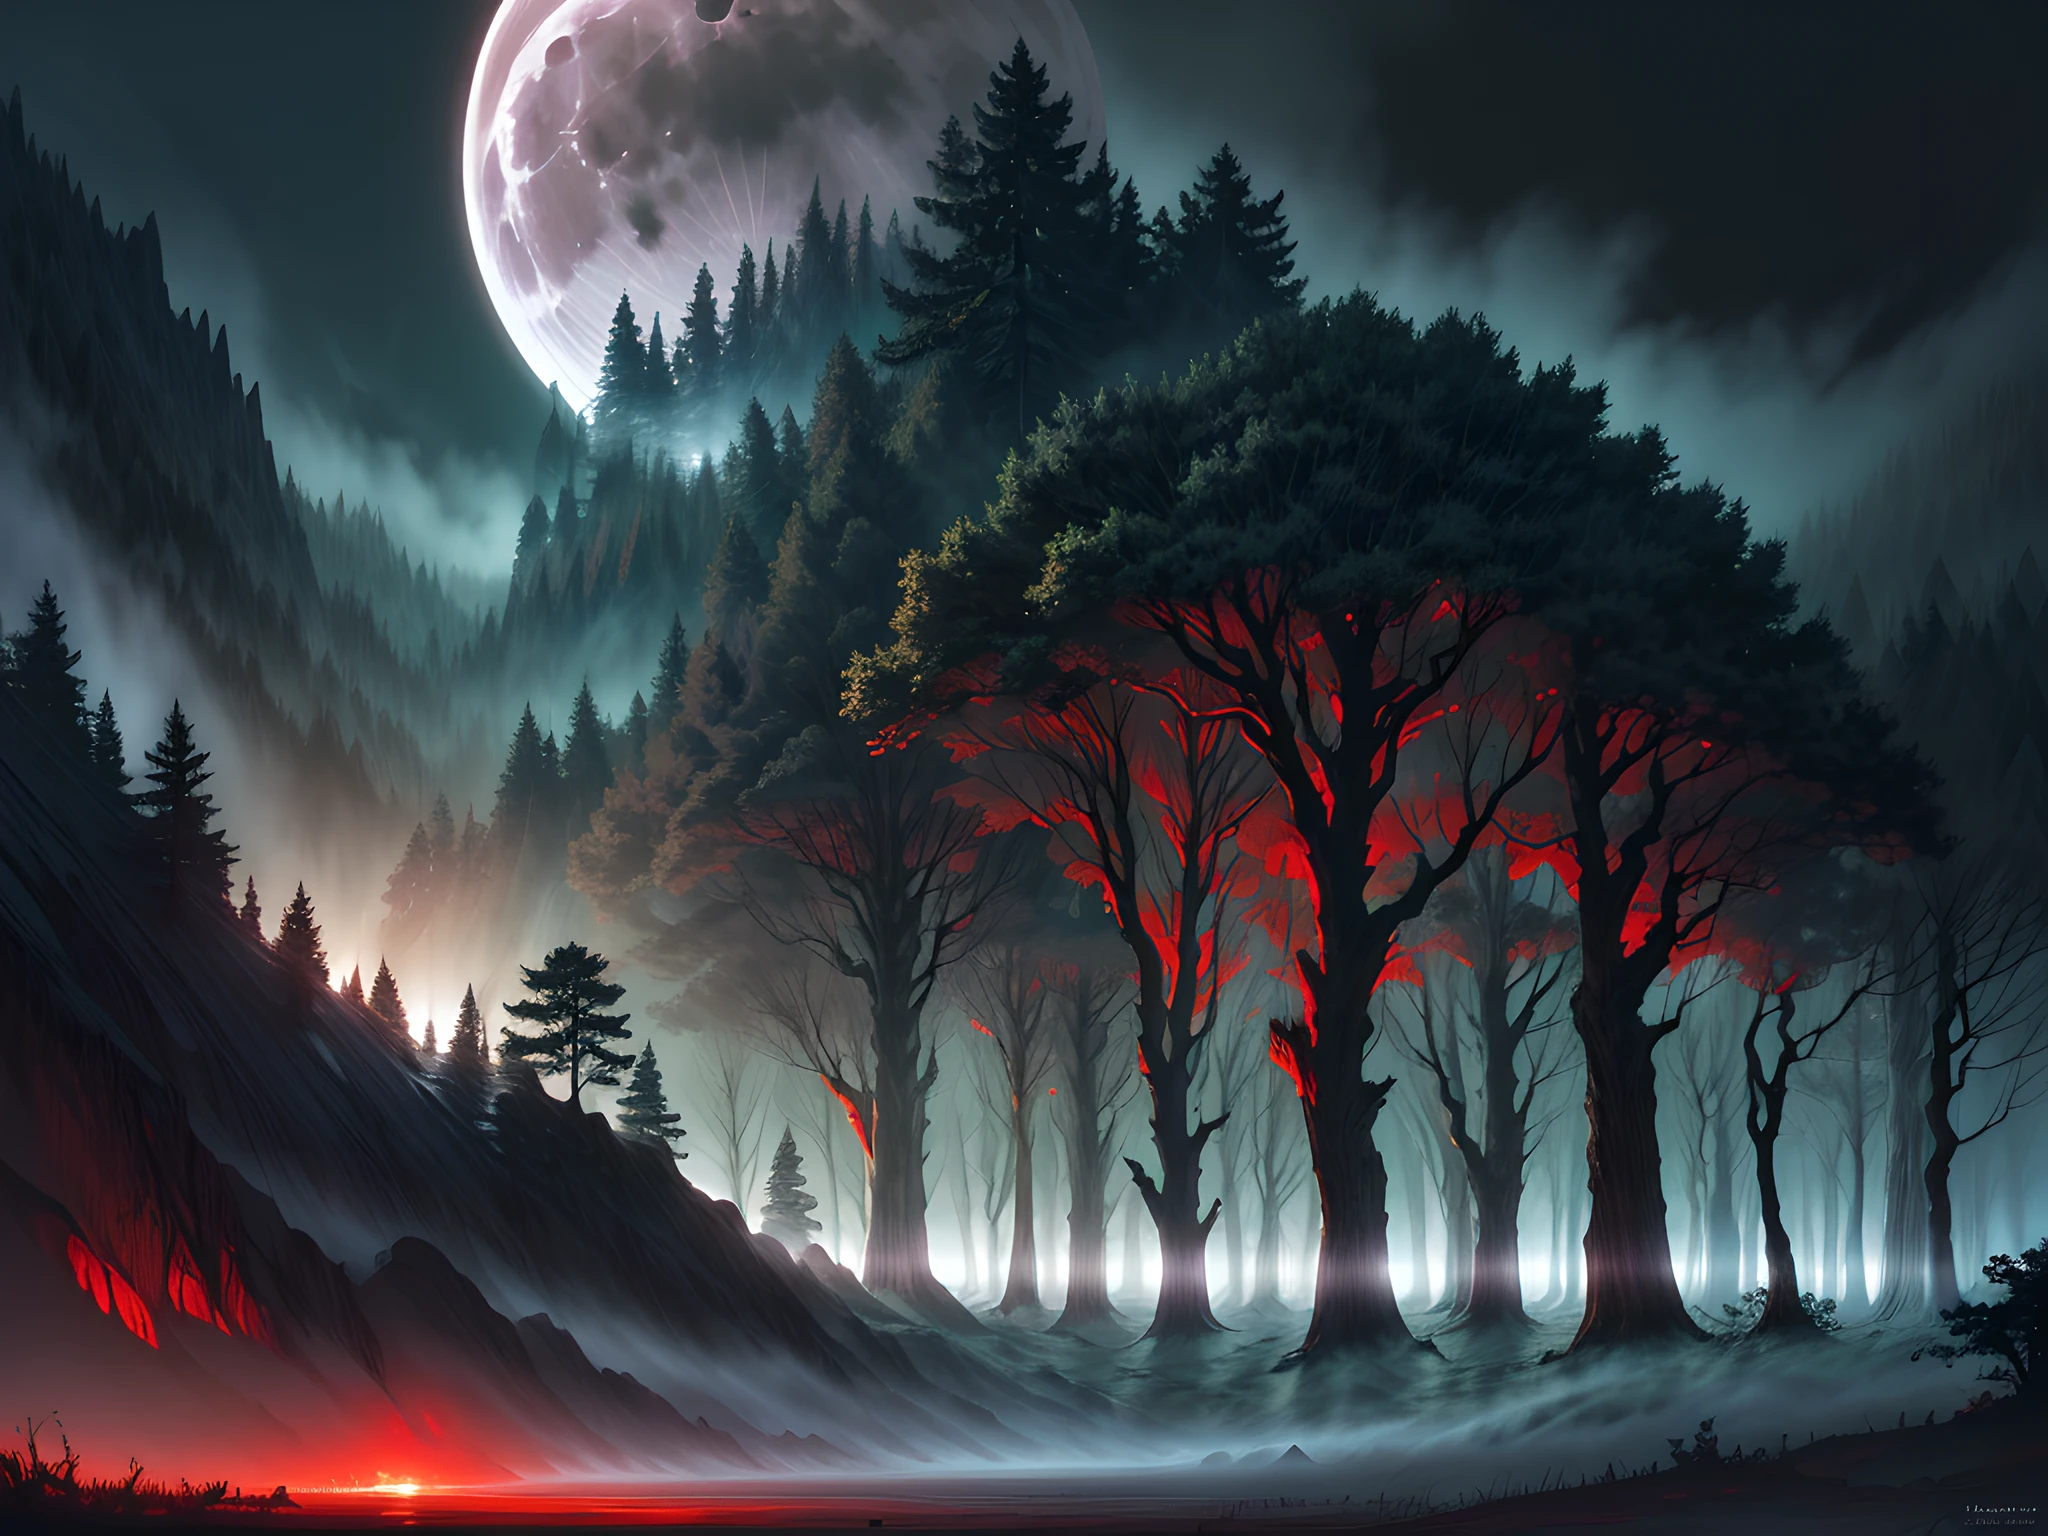 art fantastique, Art du RPG, plan ultra large, BRUT, Photoréaliste, une image d&#39;une forêt sombre et fantastique, brume s&#39;élevant du sol, c&#39;est la nuit, la lune se lève à l&#39;horizon, pourtant il y a un (paire d&#39;yeux rouges de prédateur) tu vois entre les arbres,